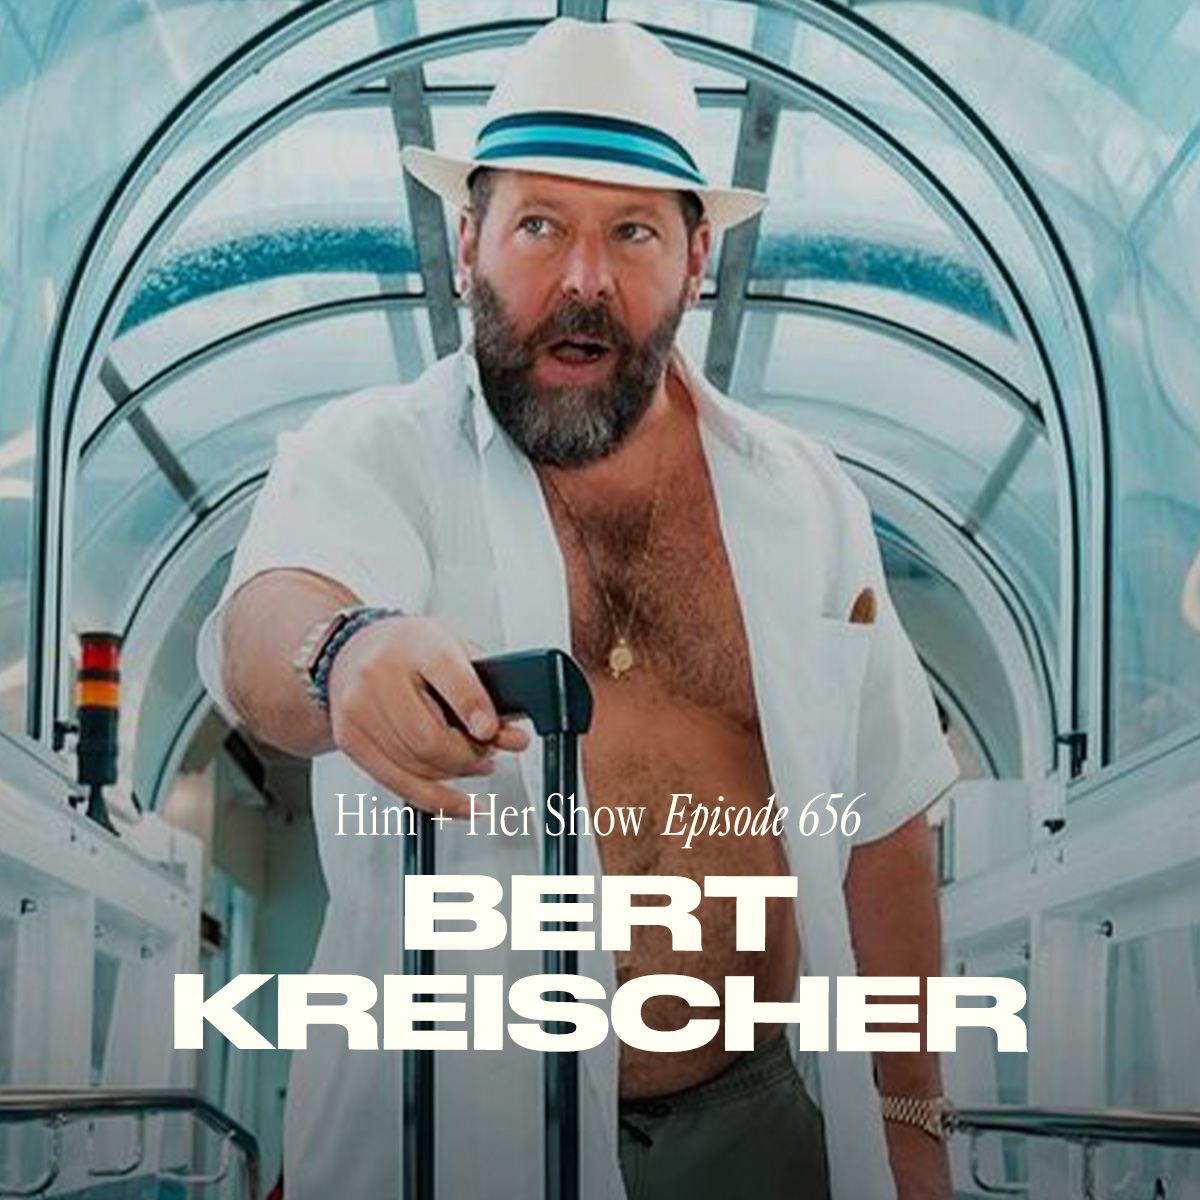 Bert Kreischer